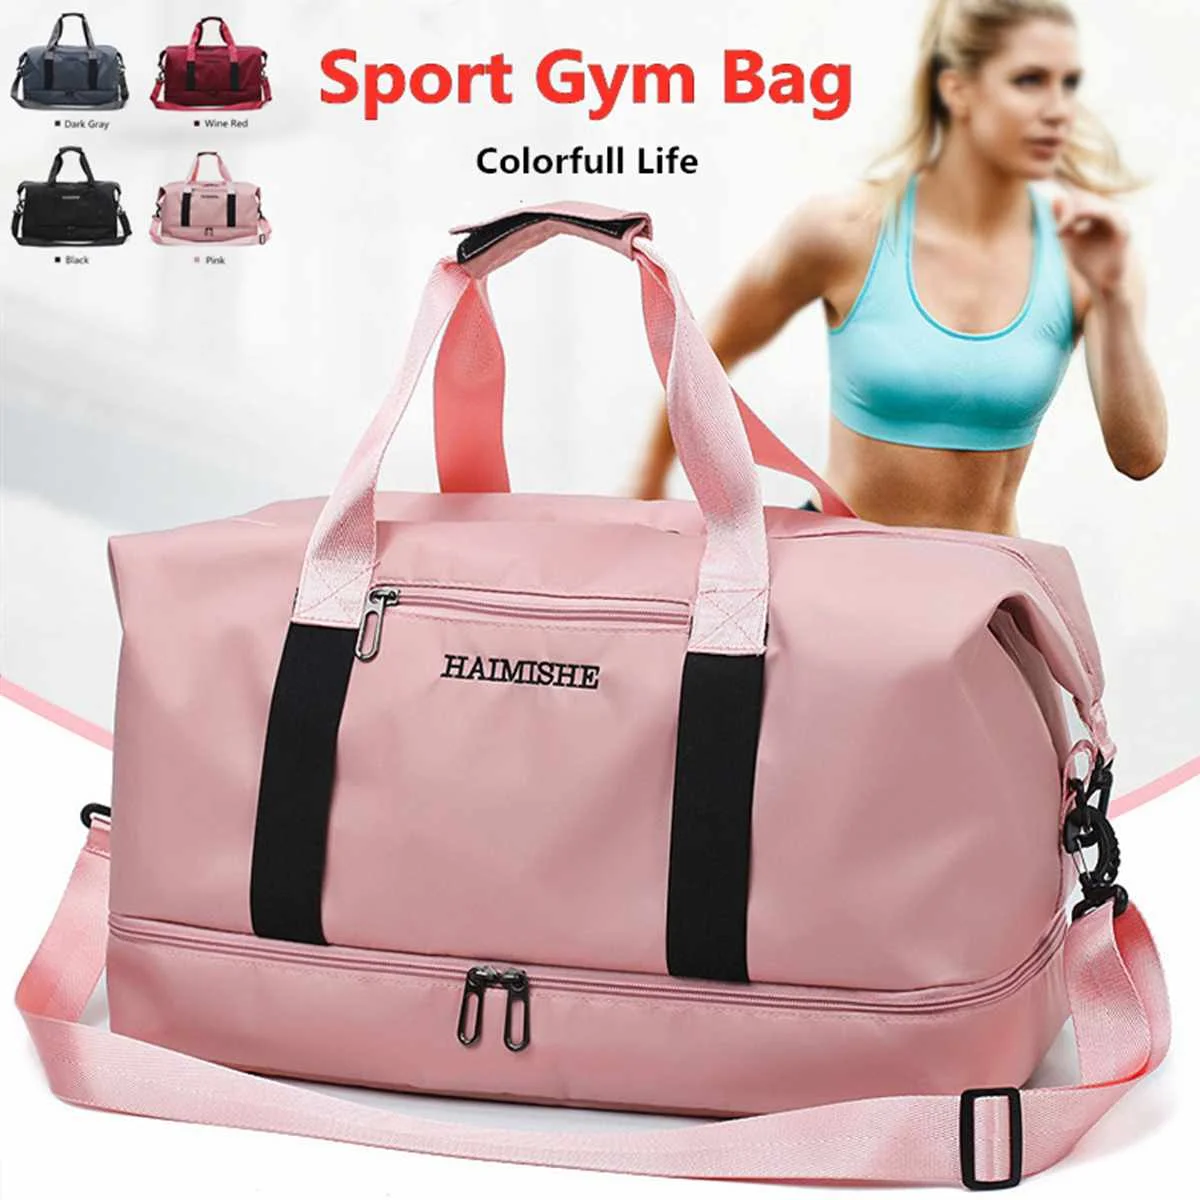 Красивая спортивная сумка. Женская спортивная сумка. Сумка для фитнеса. Сумка для фитнеса женская. Спортивная сумка женская для фитнеса.